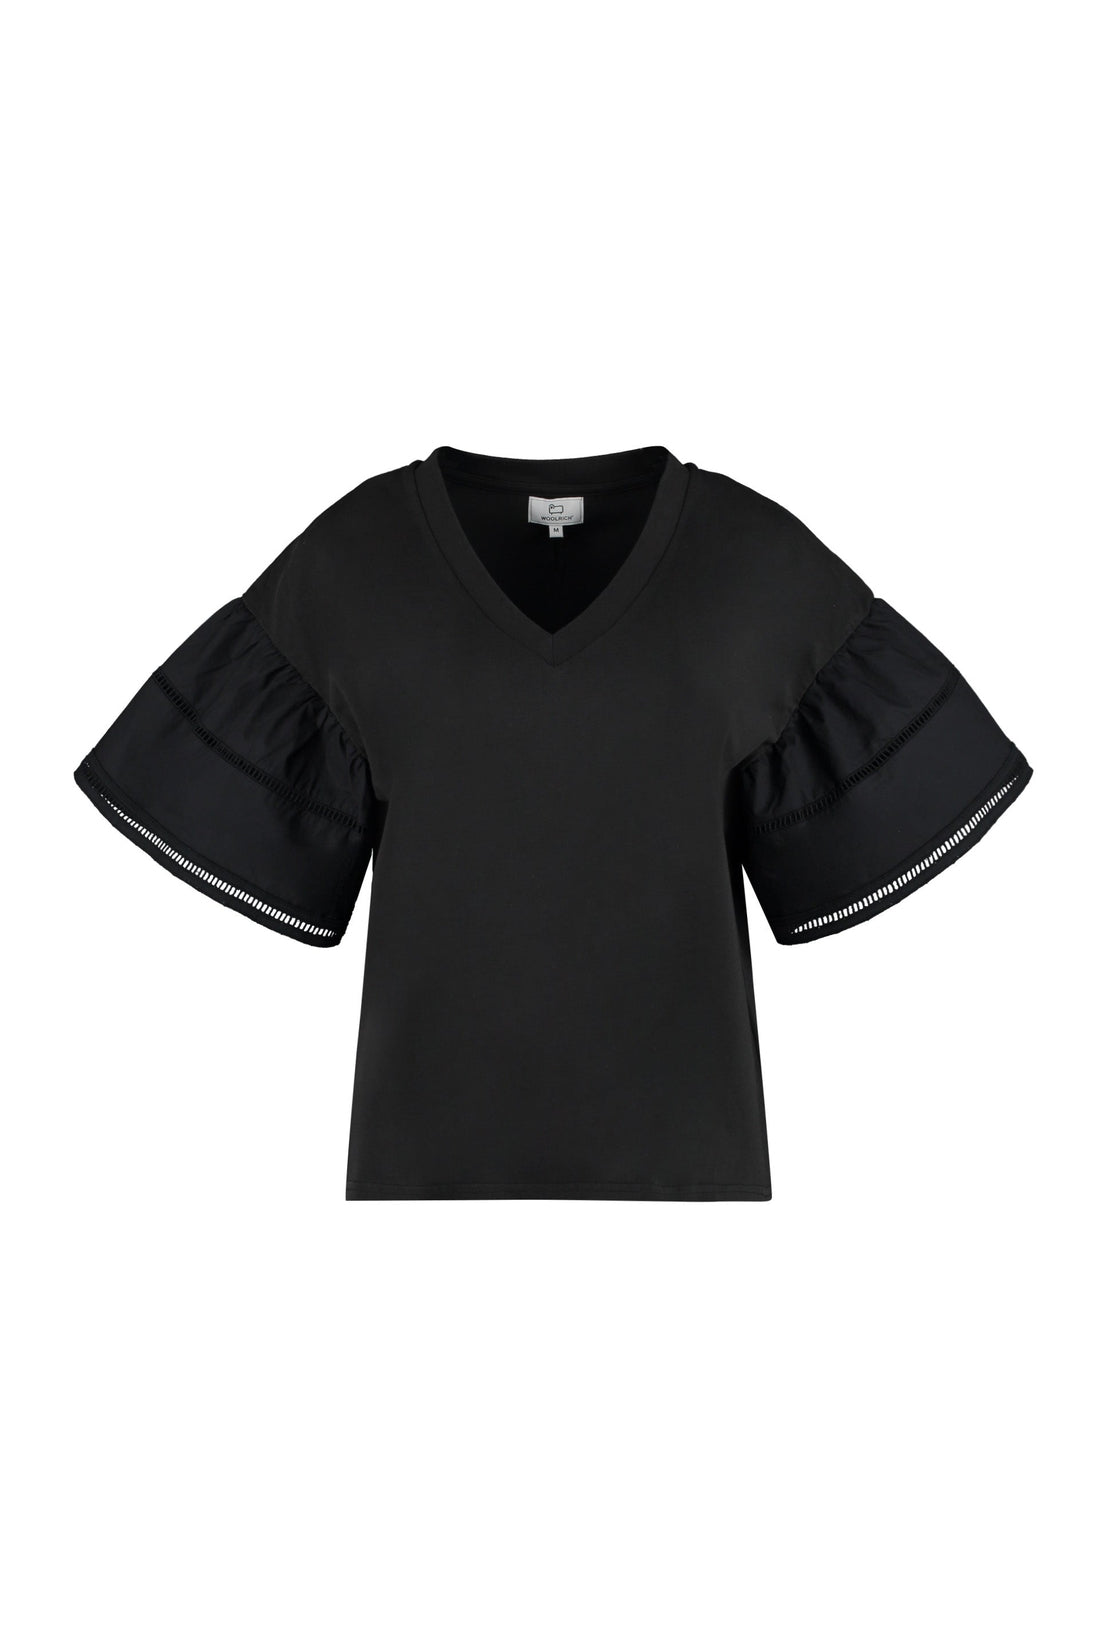 Woolrich-OUTLET-SALE-Lakeside cotton T-shirt-ARCHIVIST